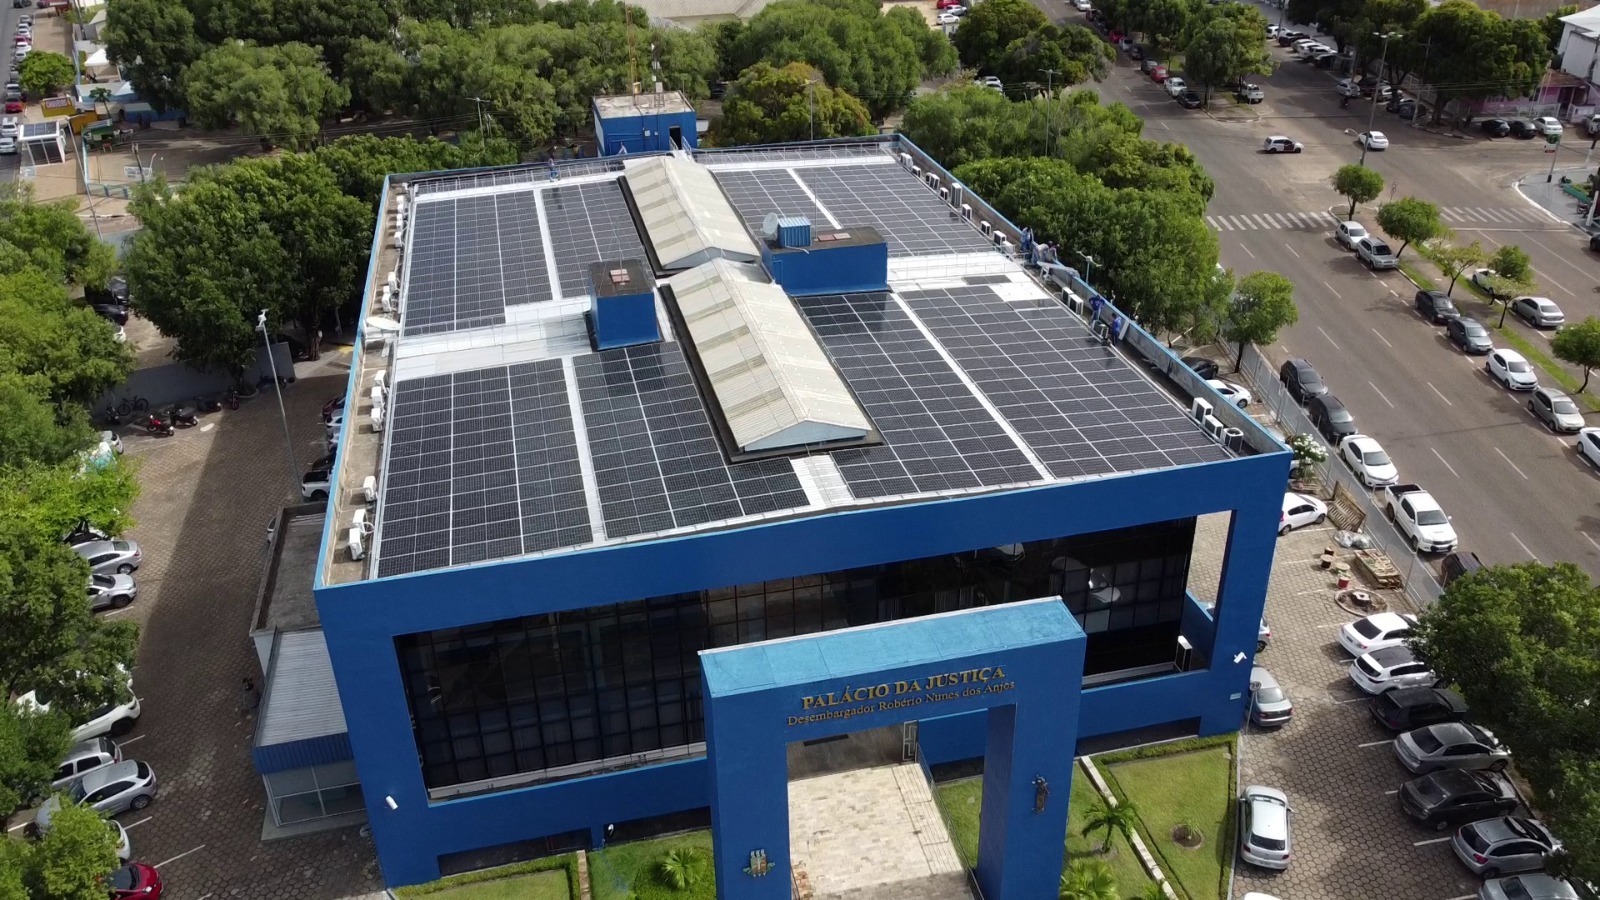 foto aerea colorida do Palacio da Justiça na qual mostra as placas solares no teto do palácio 